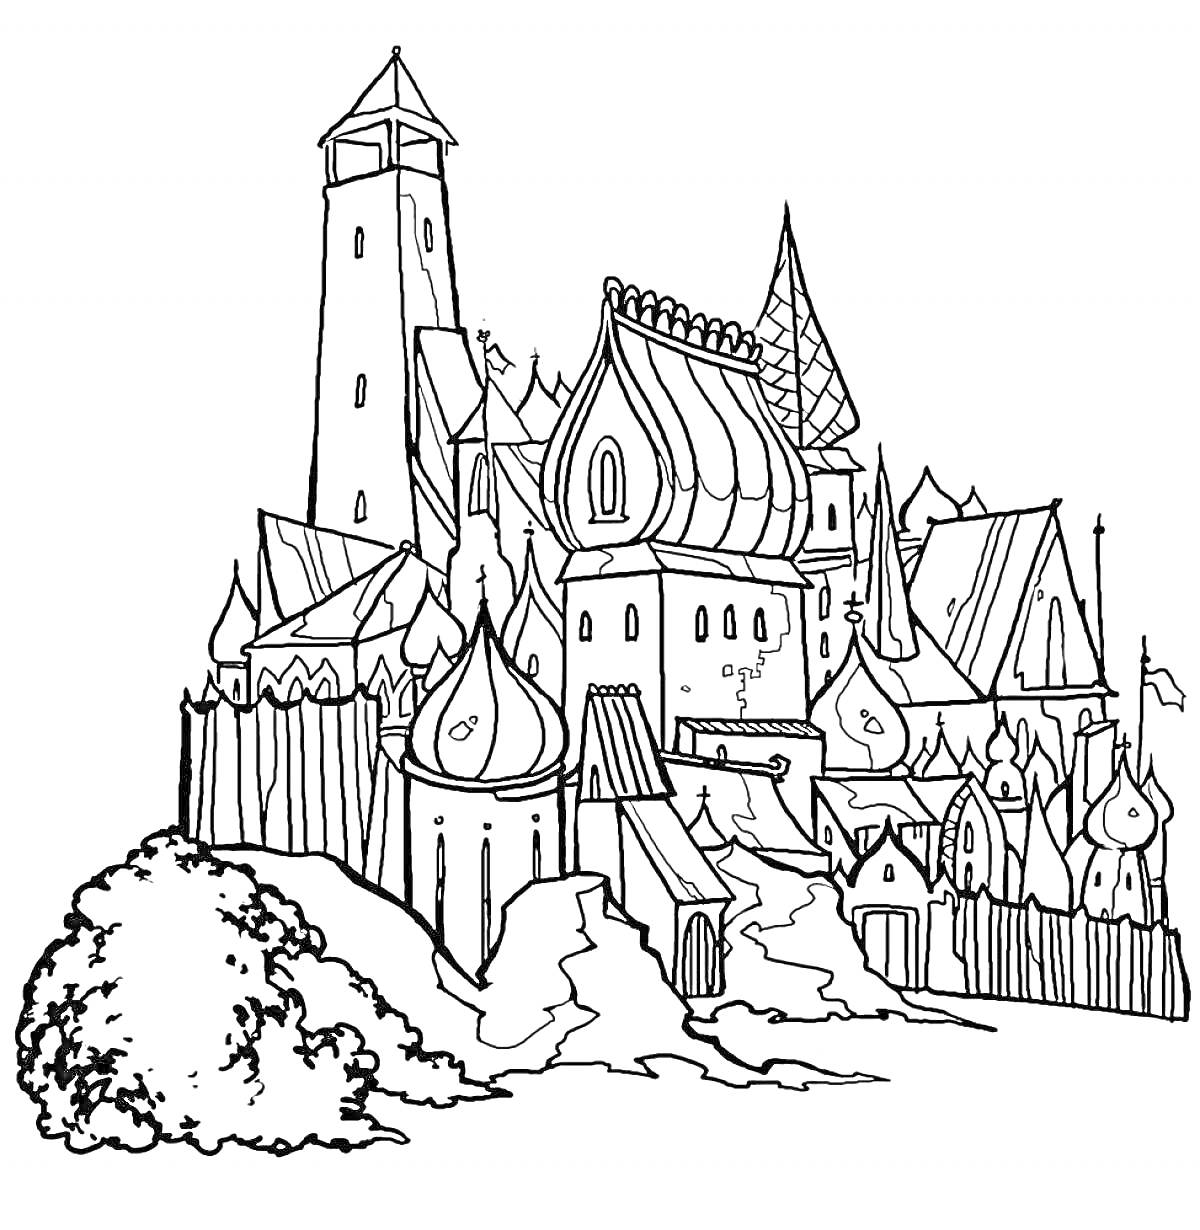 Изображение дворца царя Салтана с различными башнями и куполами, окруженного стенами и растительностью на переднем плане